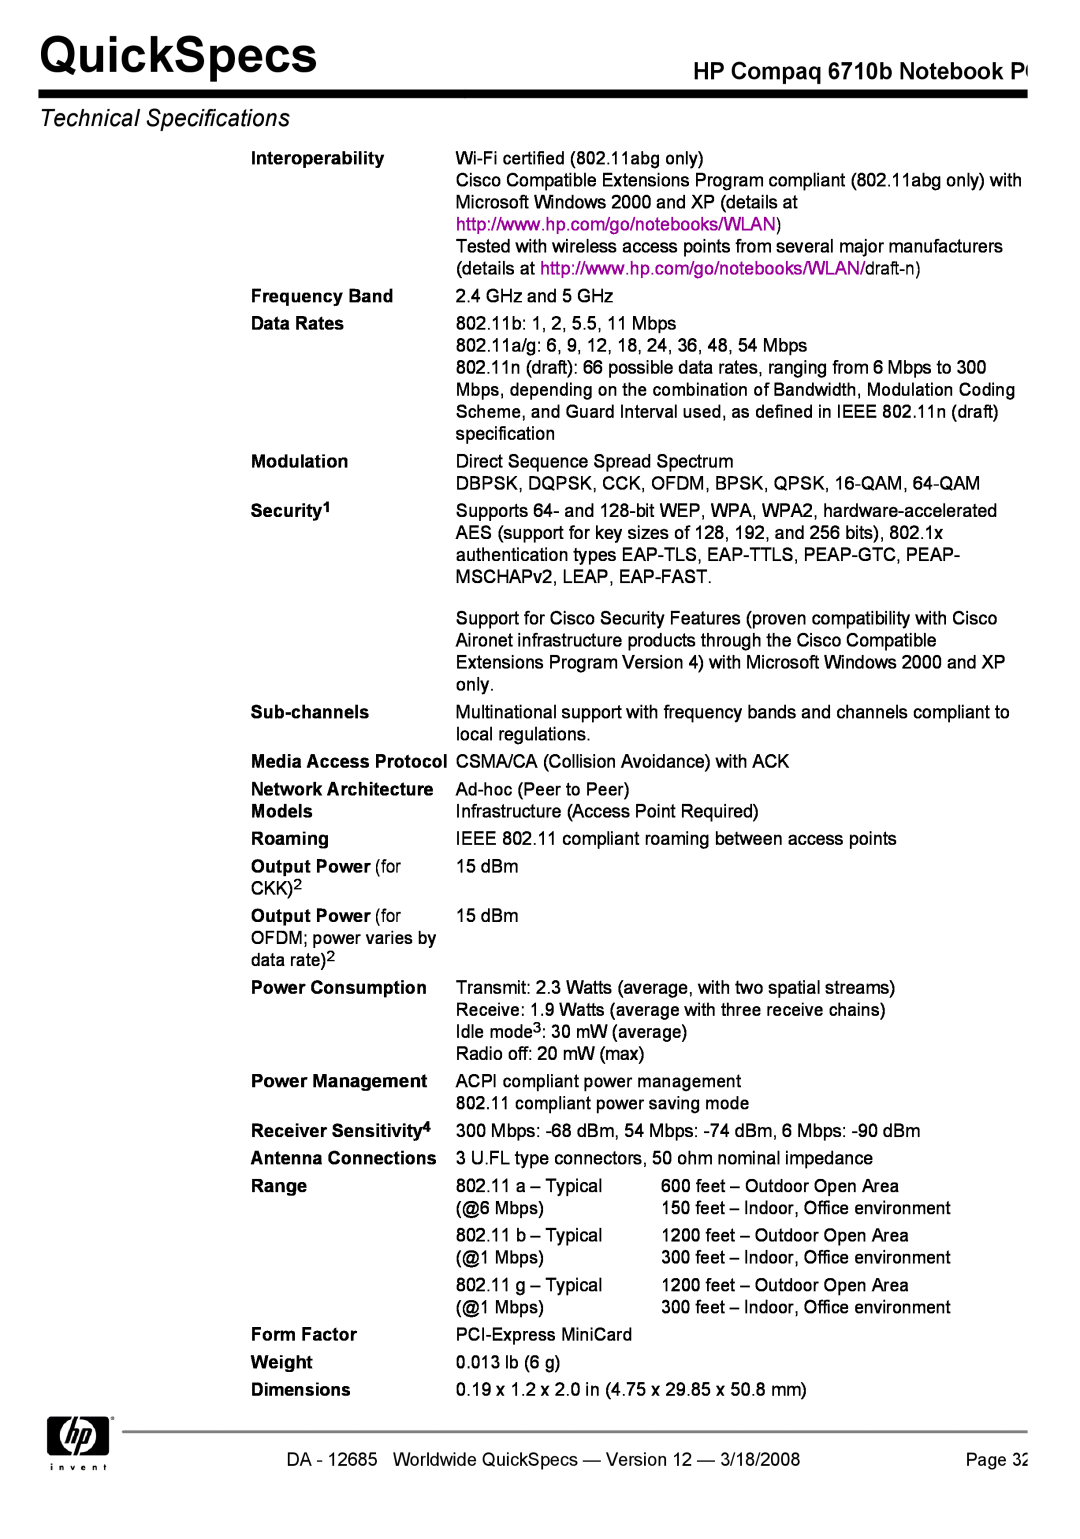 Compaq manual QuickSpecs, HP Compaq 6710b Notebook PC, Technical Specifications 